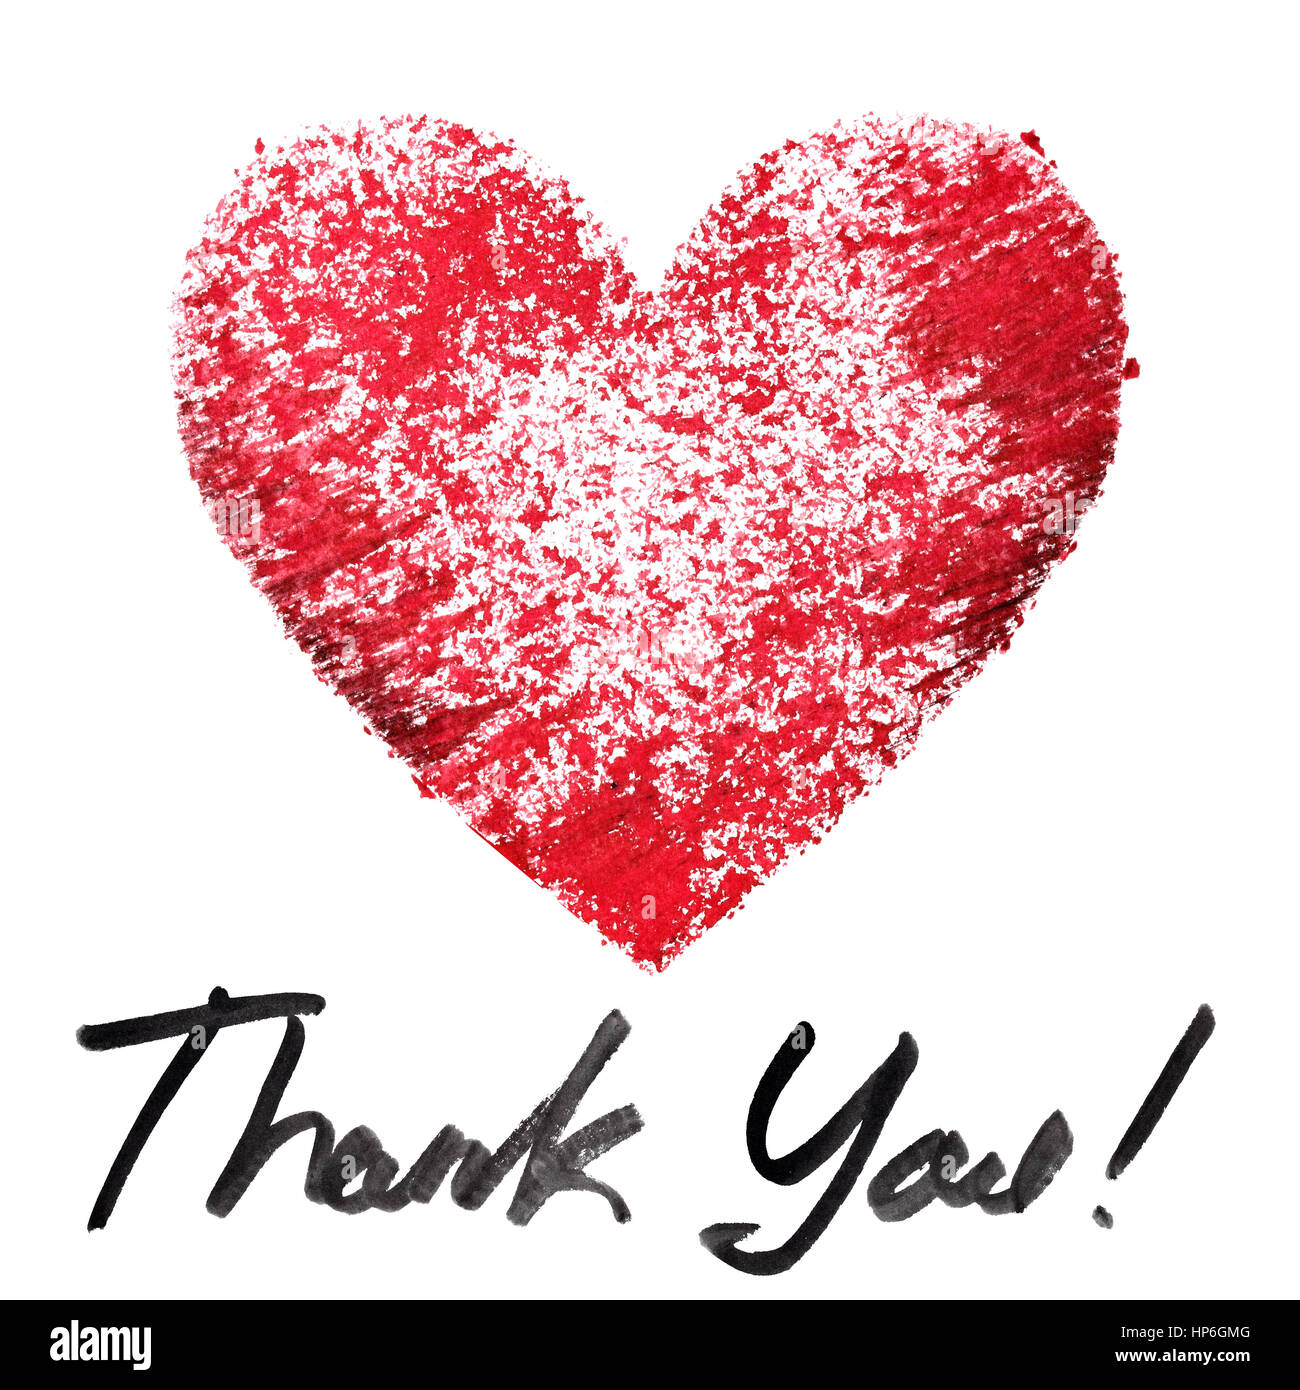 Danke Rotes Herz Schablone Und Schriftzug Auf Dem Weissen Hintergrund Stockfotografie Alamy